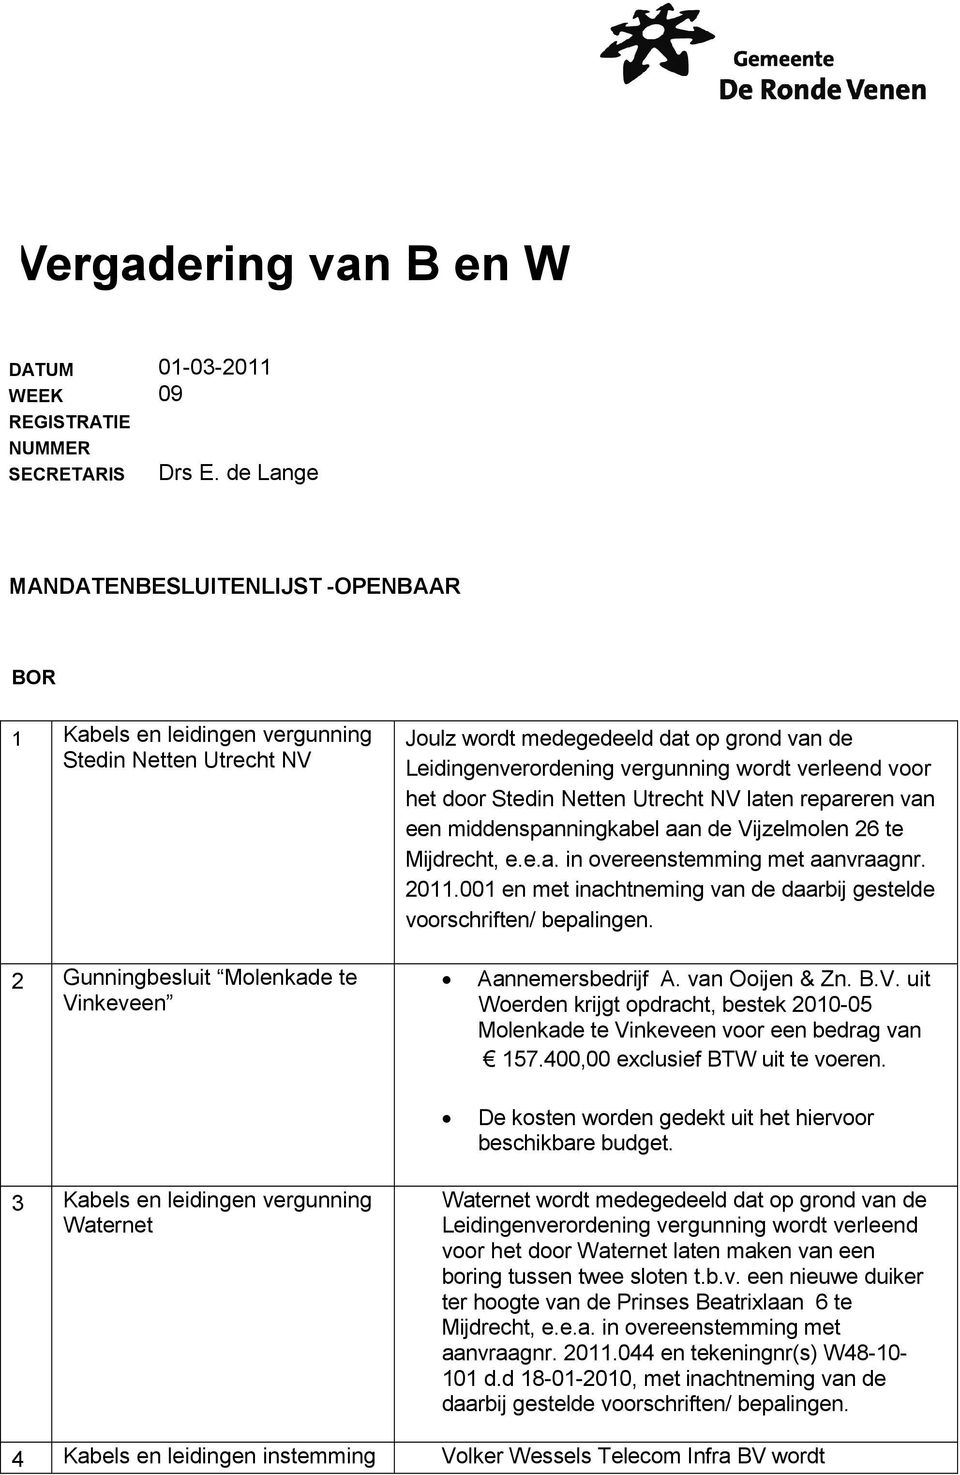 het door Stedin Netten Utrecht NV laten repareren van een middenspanningkabel aan de Vijzelmolen 26 te Mijdrecht, e.e.a. in overeenstemming met aanvraagnr. 2011.